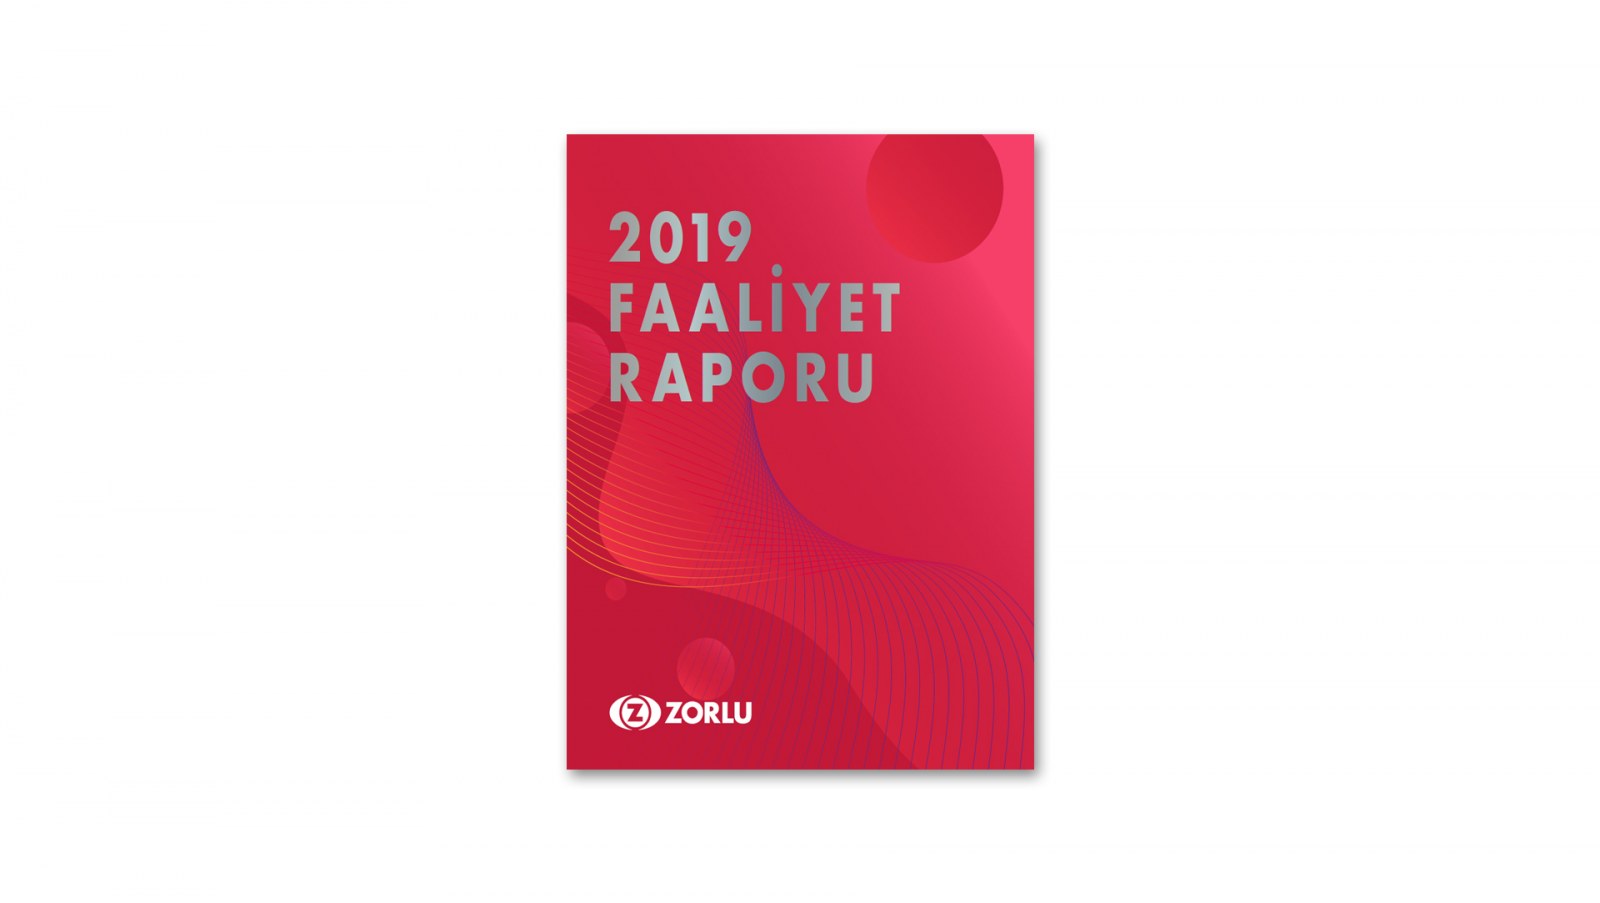 ZORLU GRUBU / 2019 Faaliyet Raporu / 2019 Annual Report